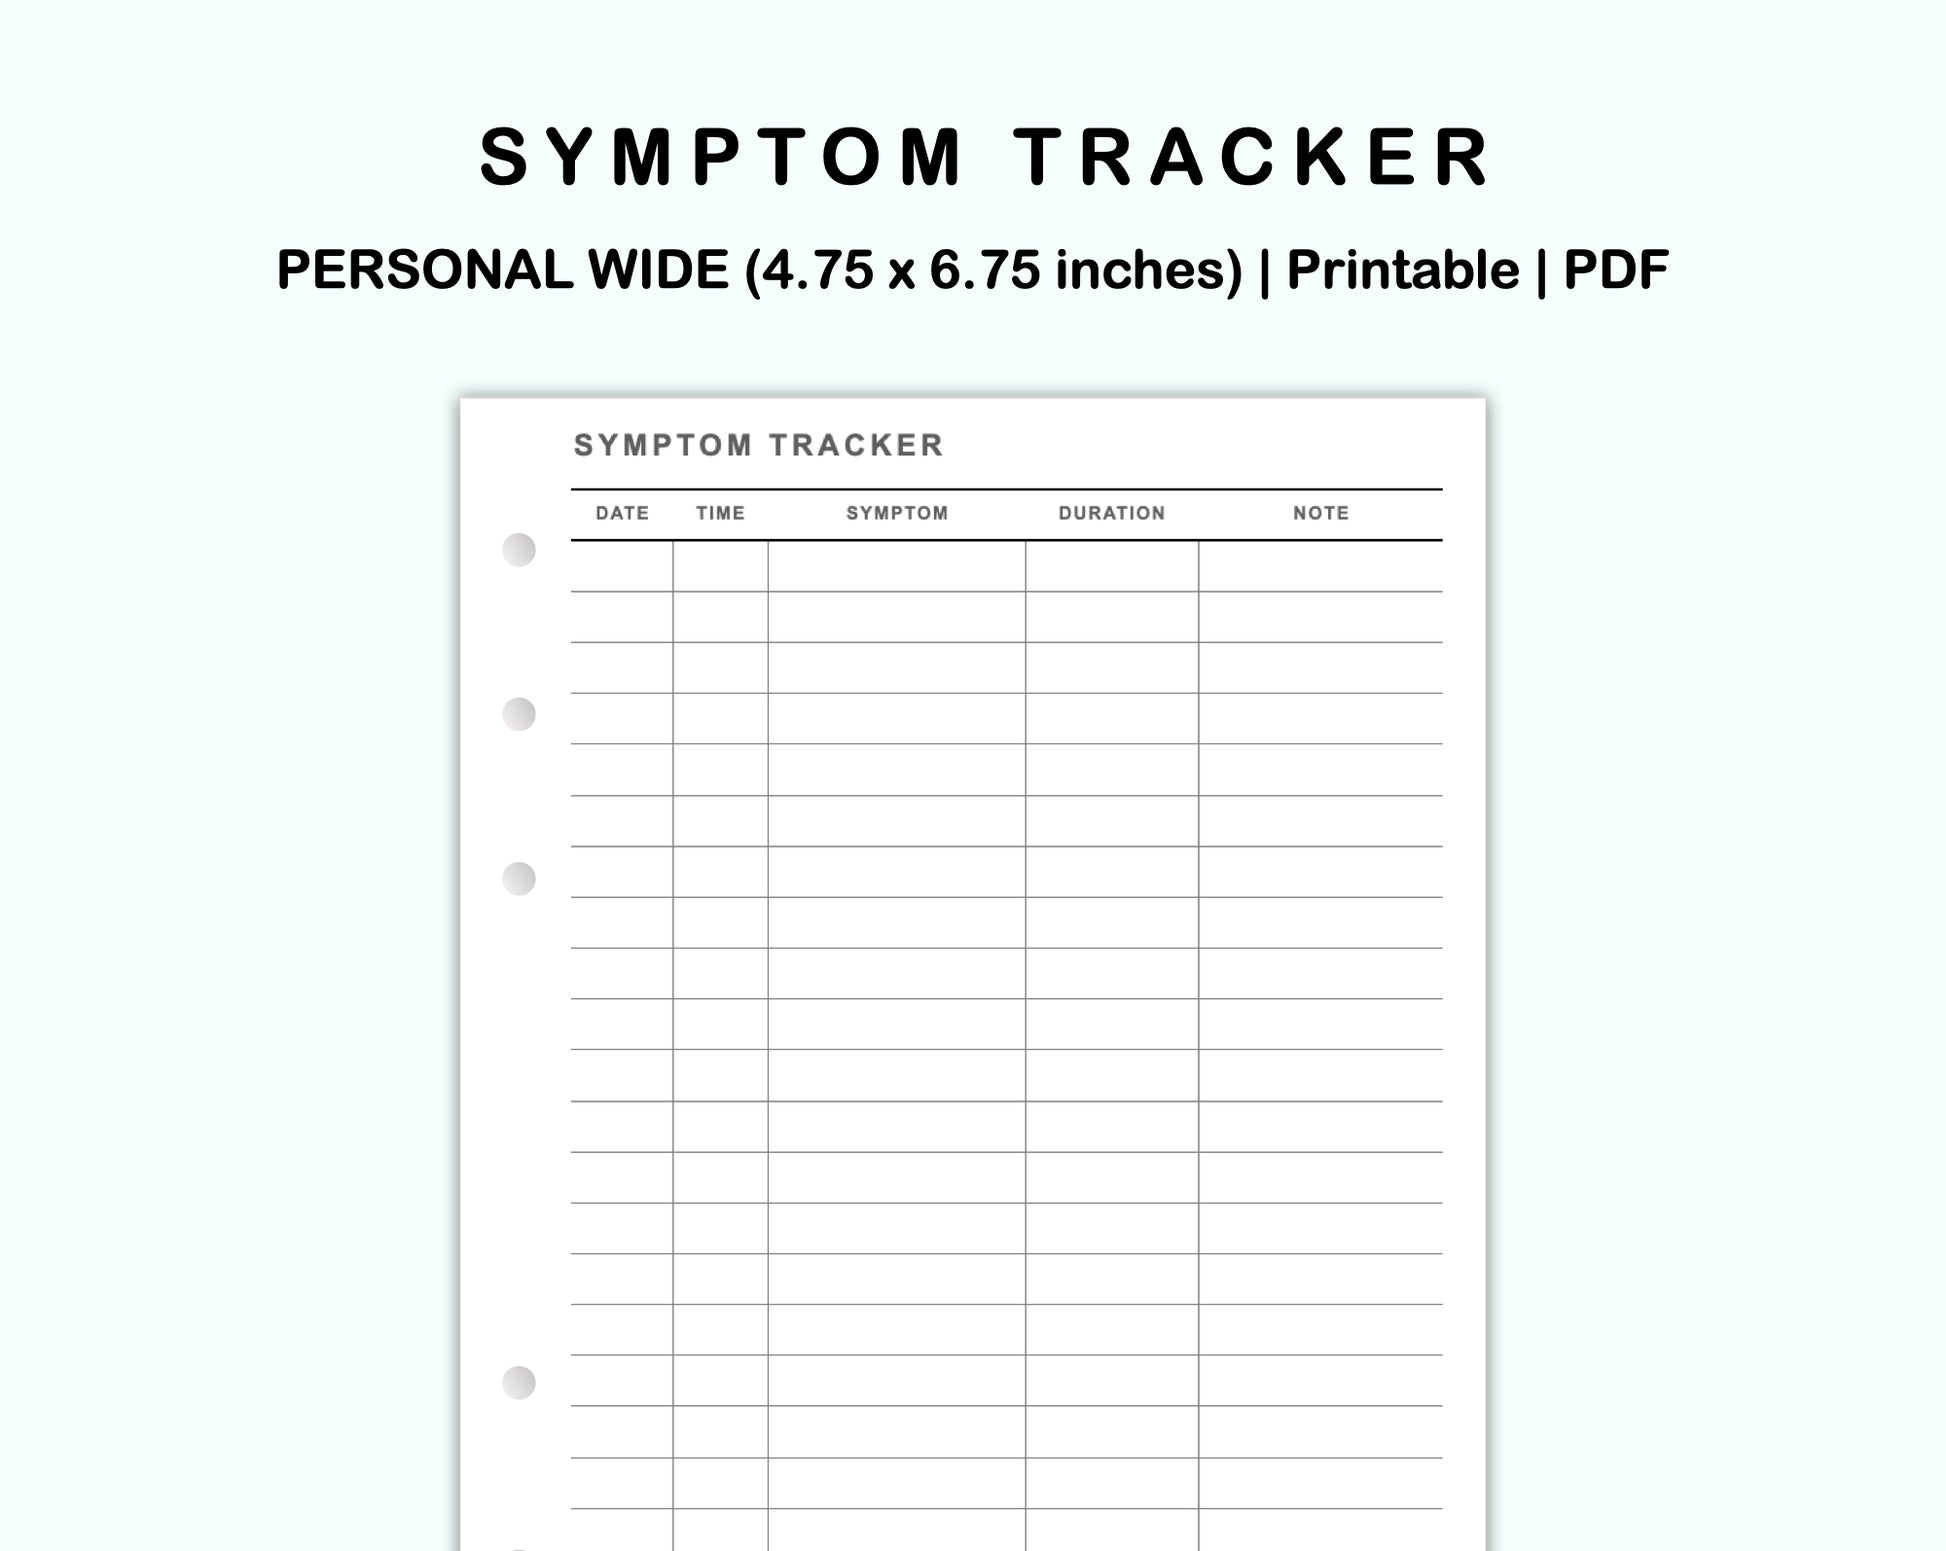 Symptom tracking